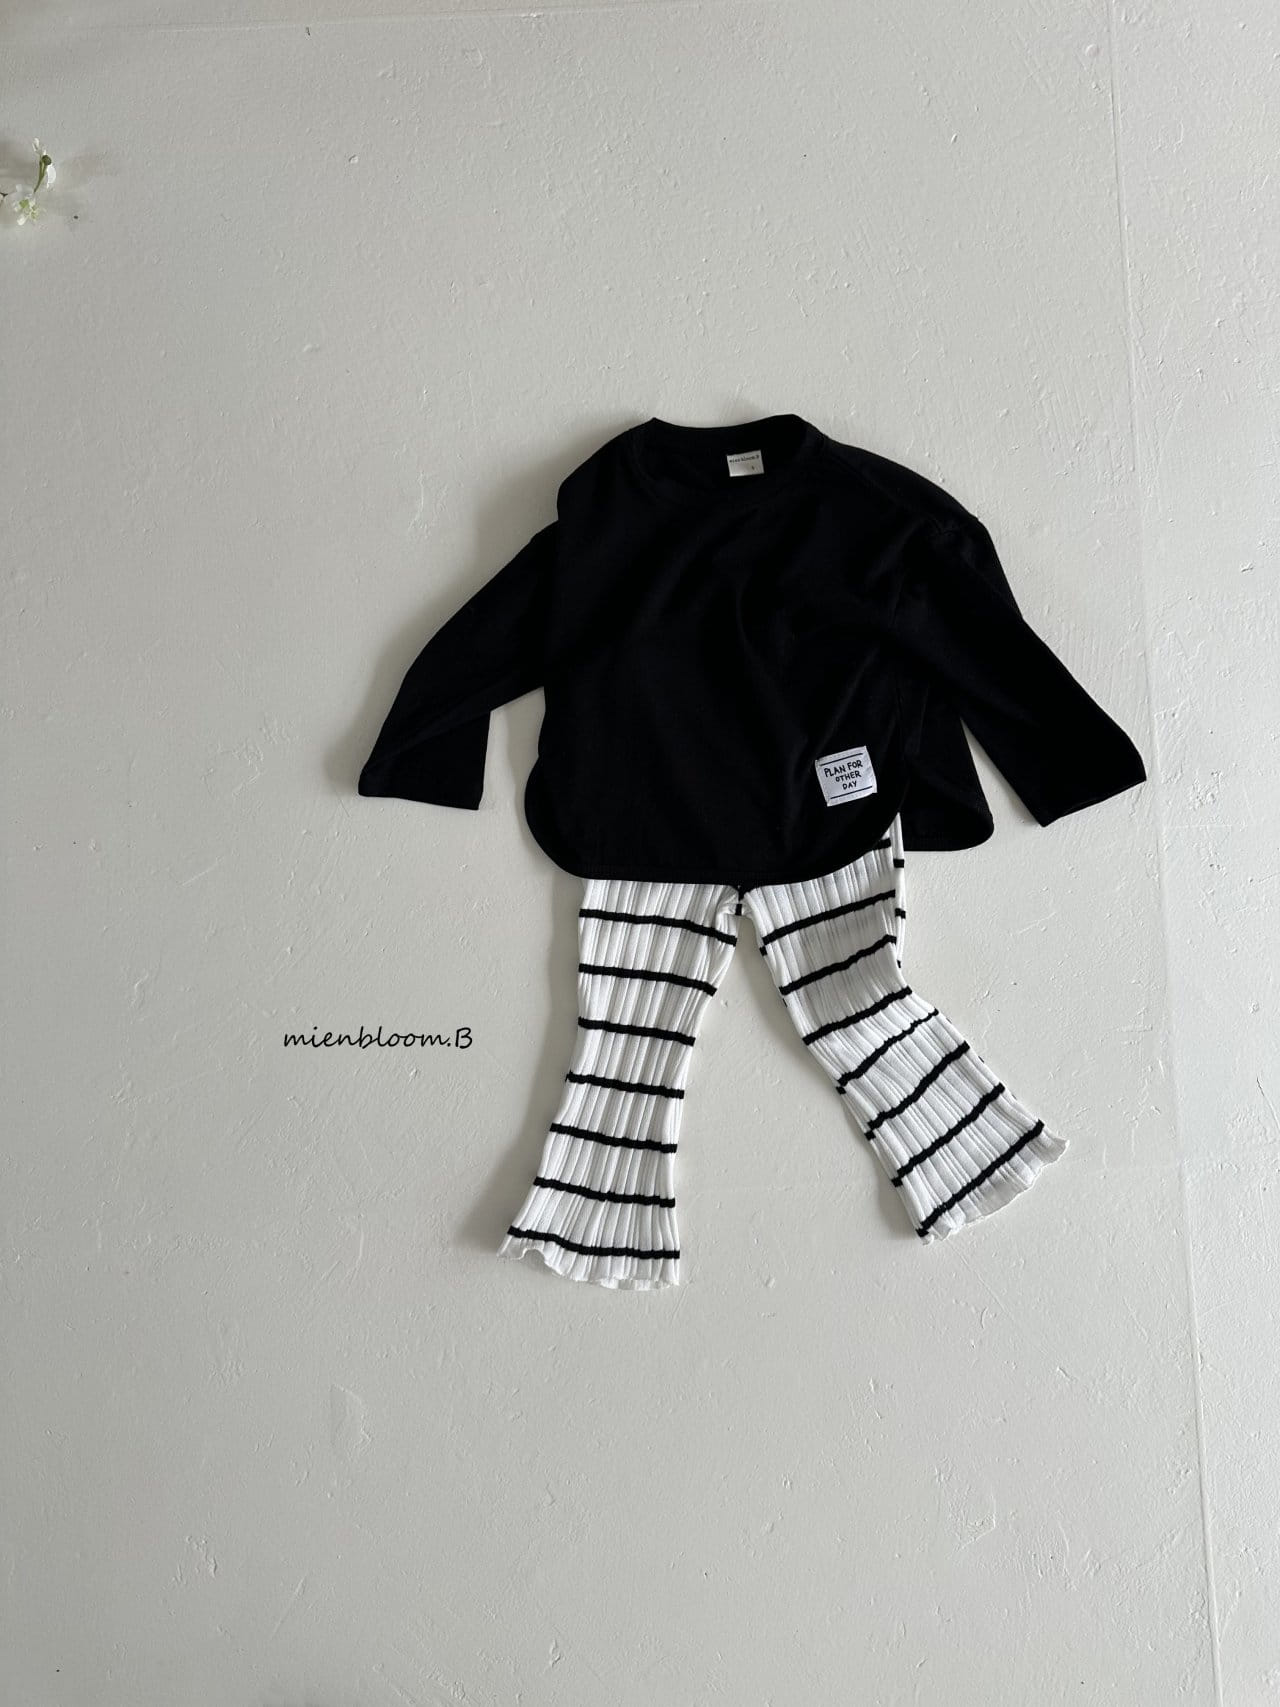 Mienbloom B - Korean Children Fashion - #childrensboutique - Round  Label Tee - 3